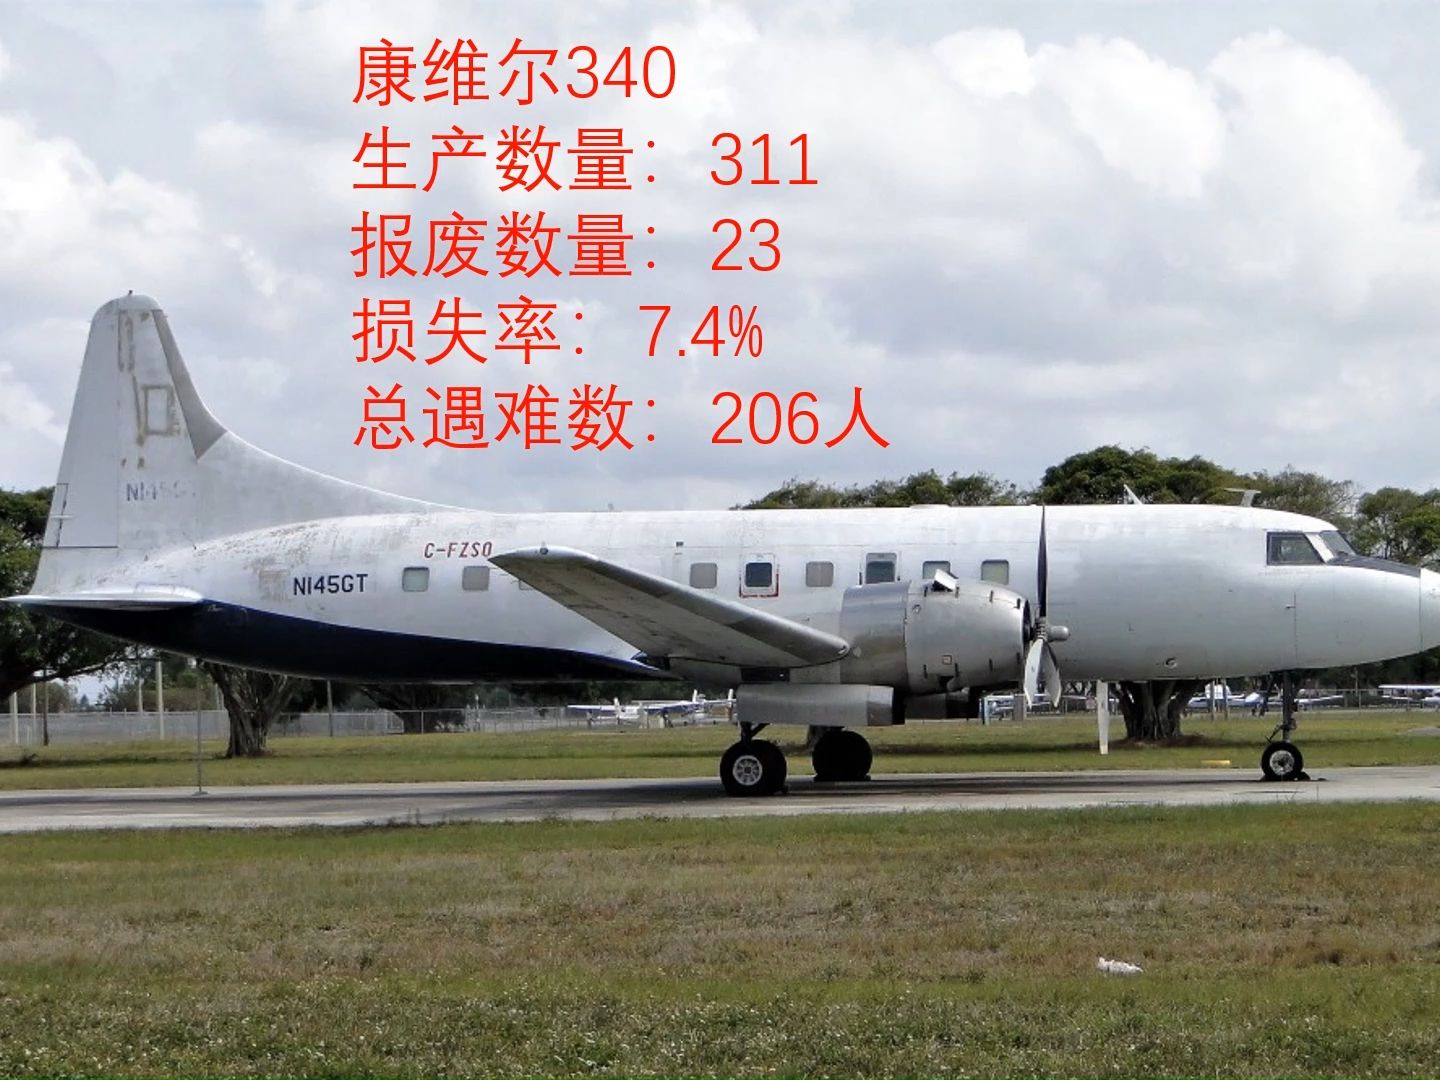 盘点世界民航飞机事故率【ATR】【DHC】【康维尔】